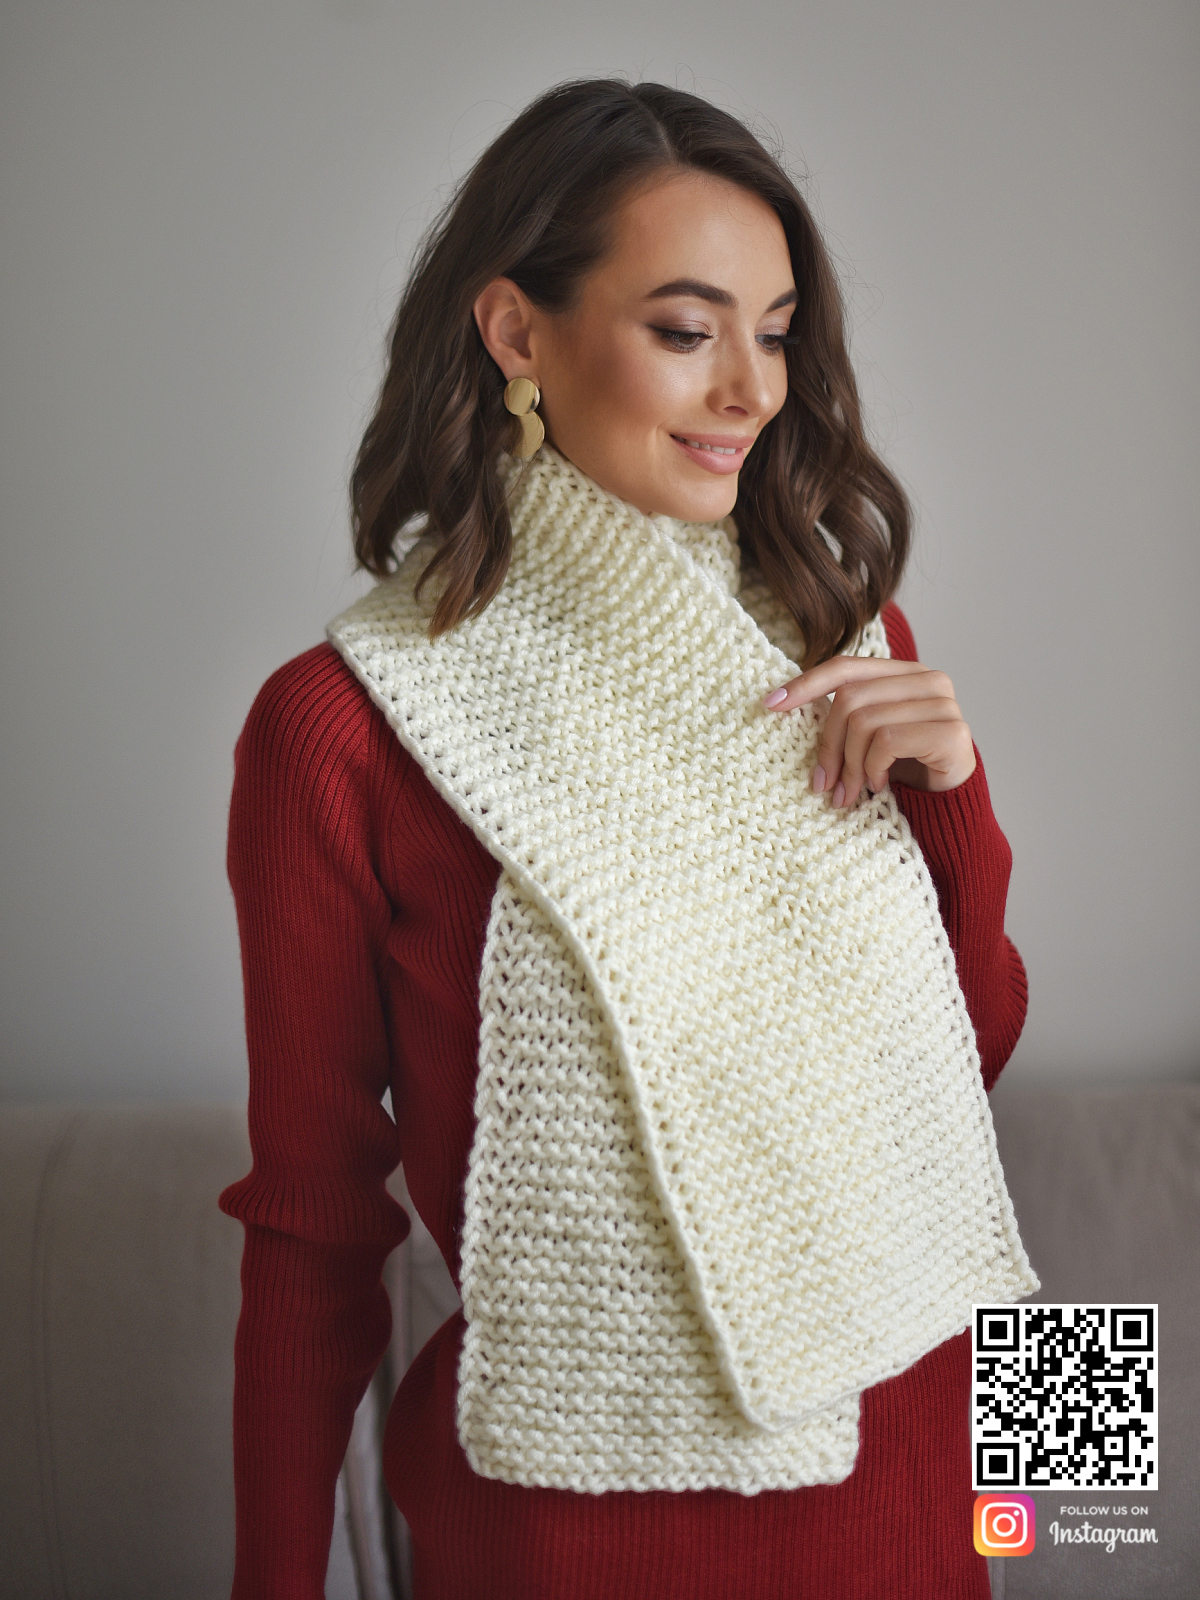 На четвертой фотографии готовый вязаный белый шарф в интернет-магазине Shapar, бренда трикотажа и связанной одежды ручной работы.